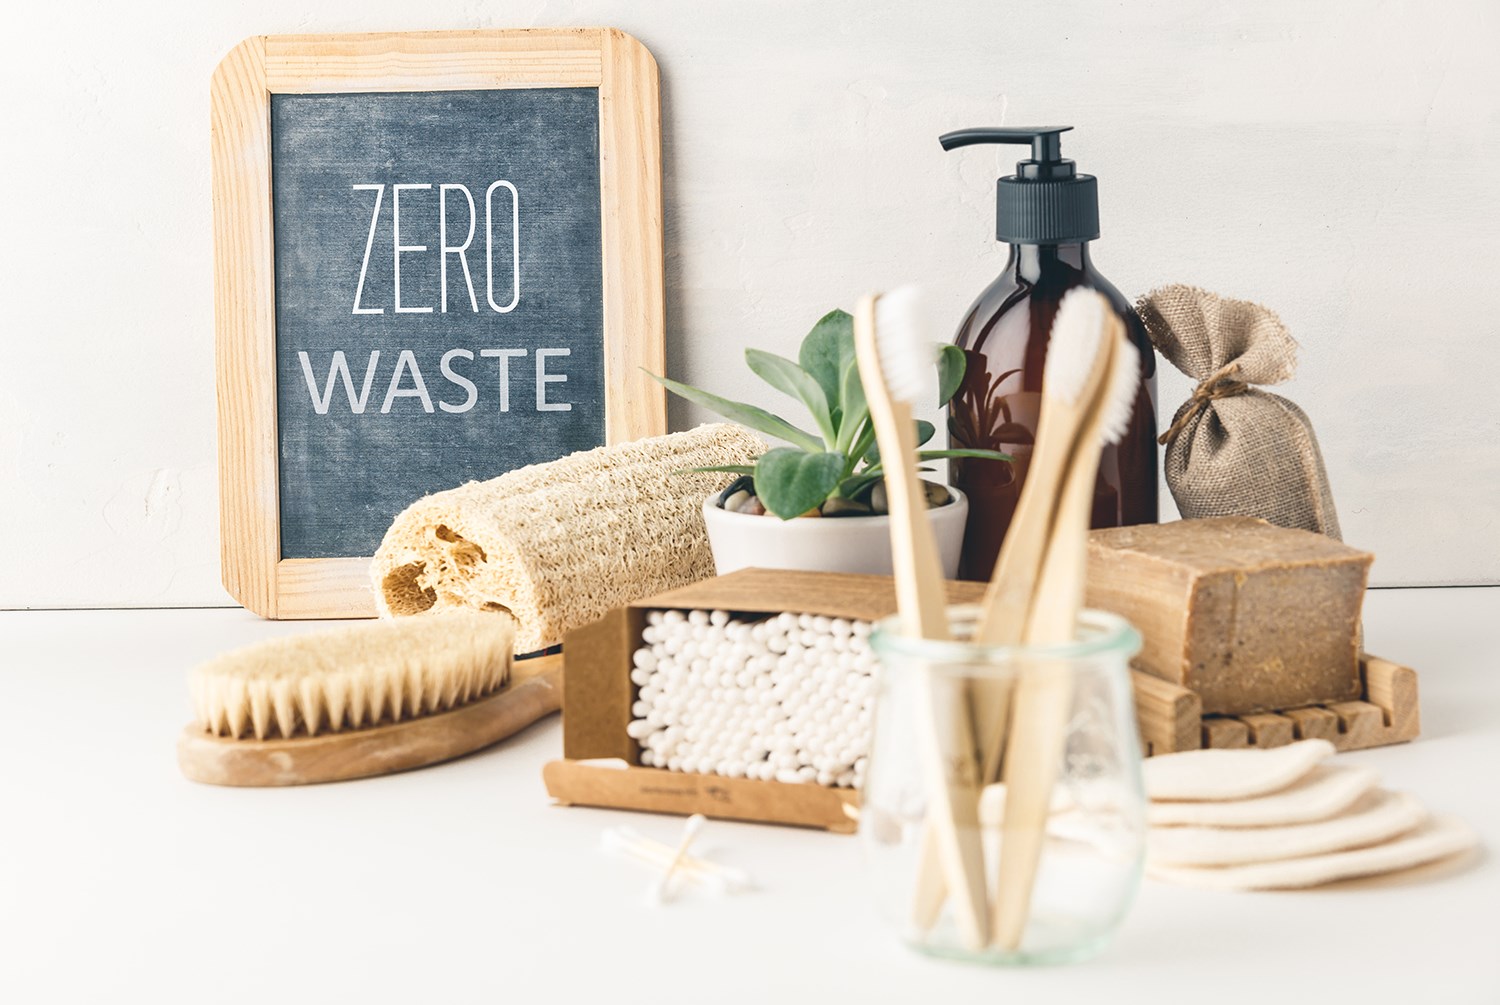 Återvunna artiklar till badrummet, står Zero waste på en skylt. 